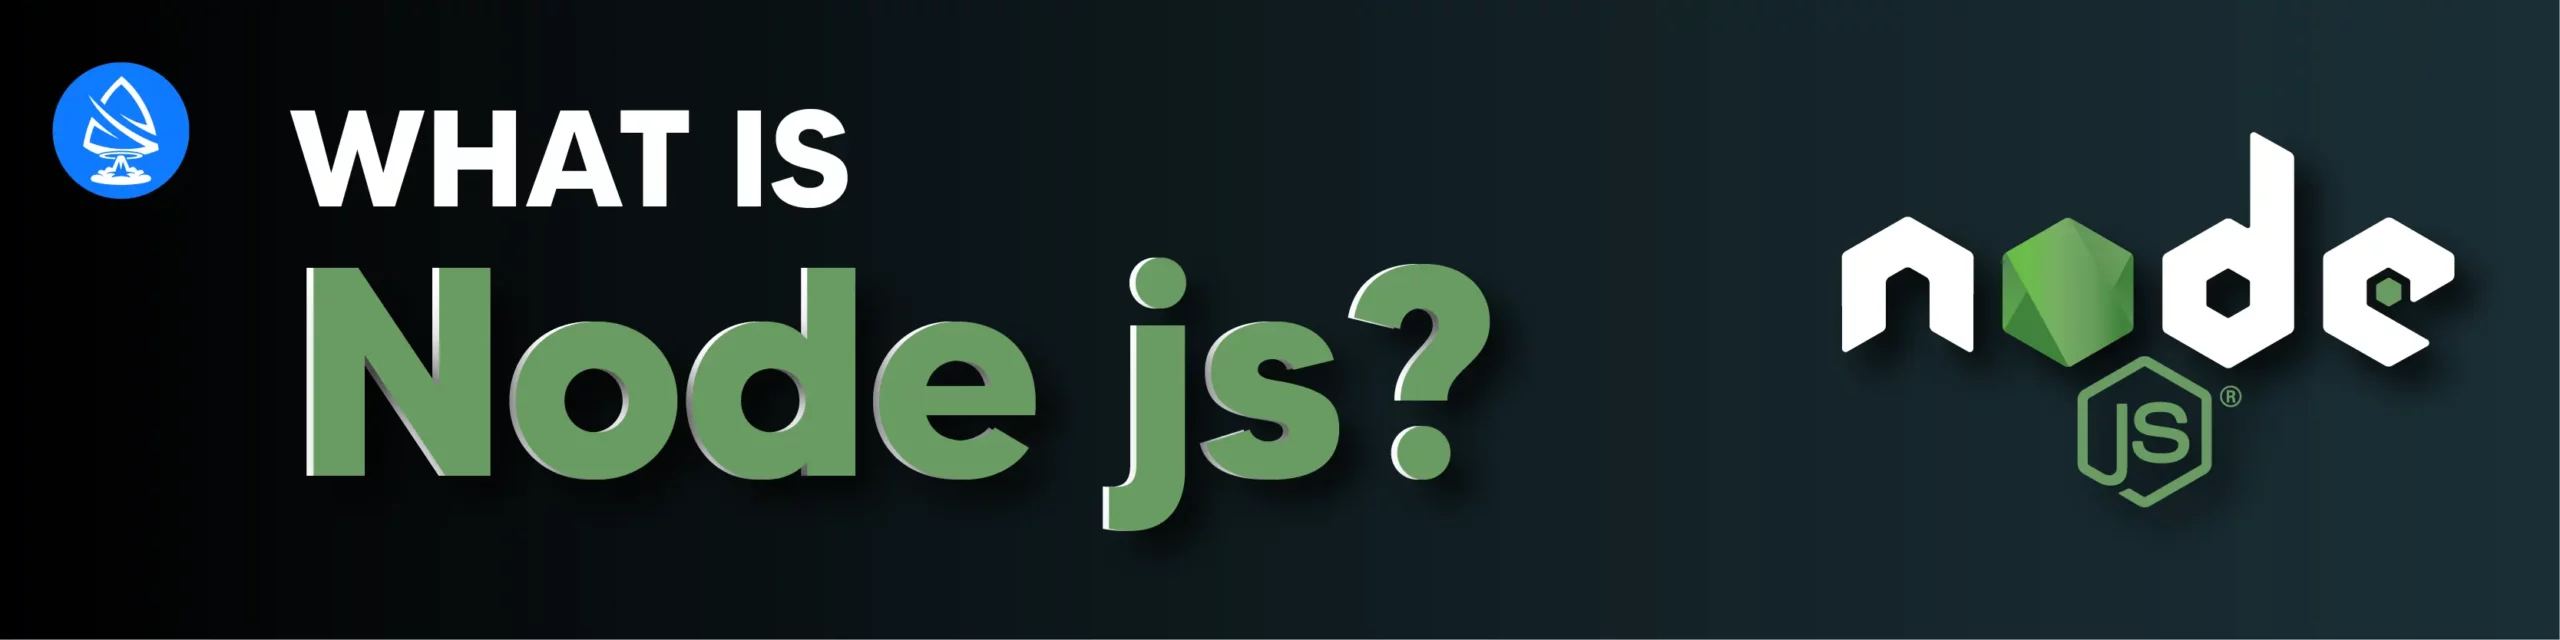 What is Node js? 